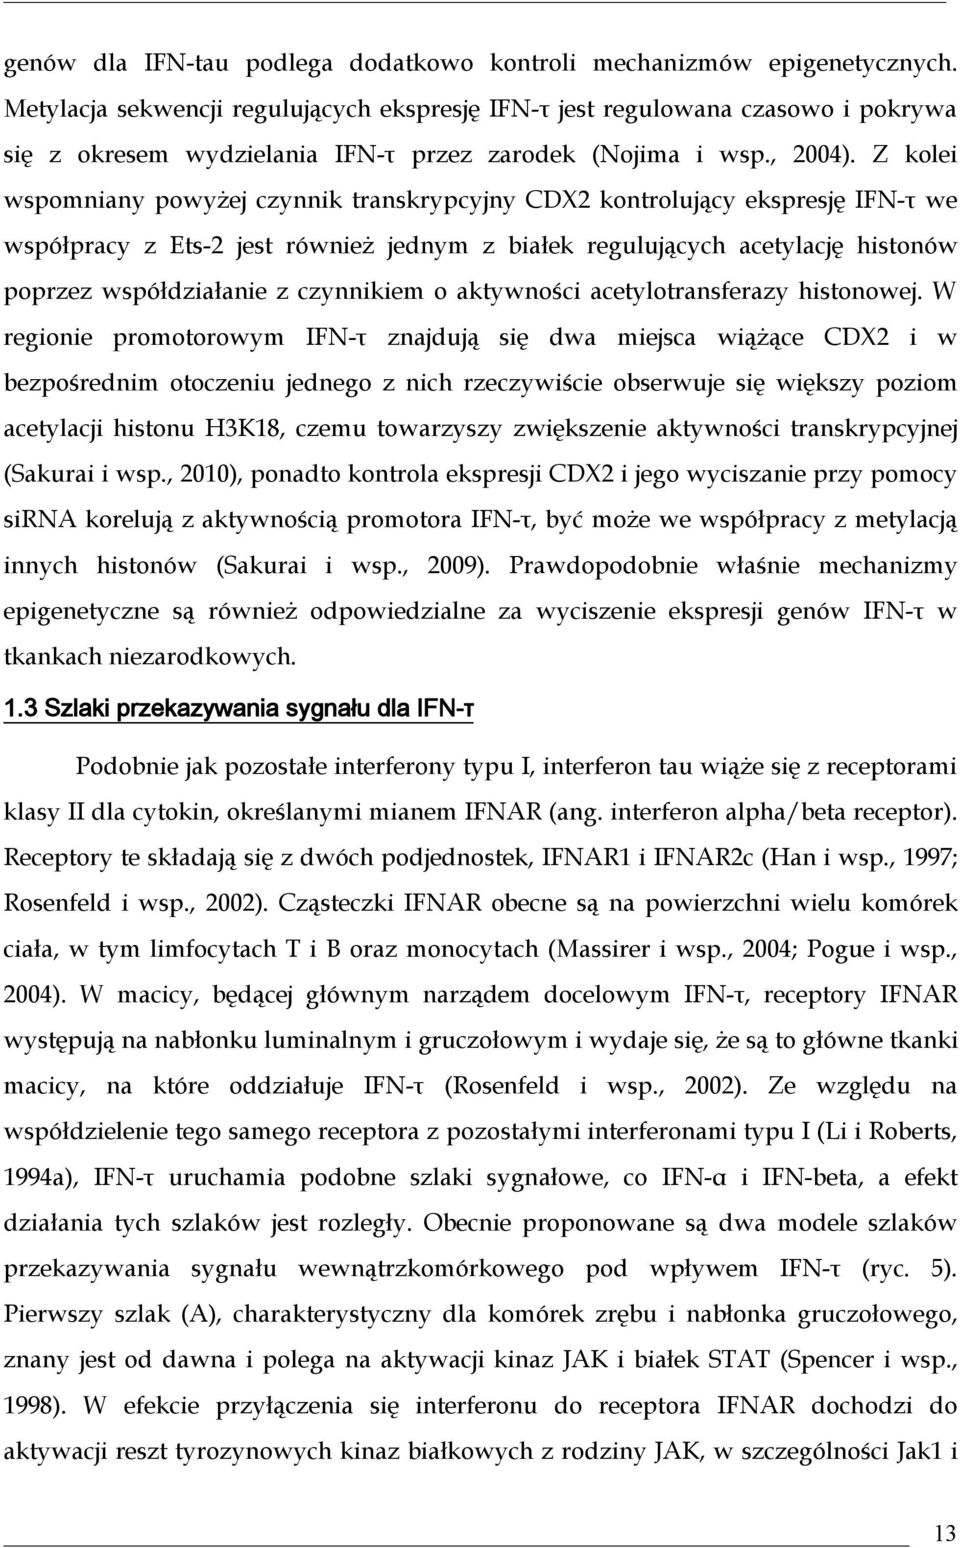 Z kolei wspomniany powyżej czynnik transkrypcyjny CDX2 kontrolujący ekspresję IFN-τ we współpracy z Ets-2 jest również jednym z białek regulujących acetylację histonów poprzez współdziałanie z